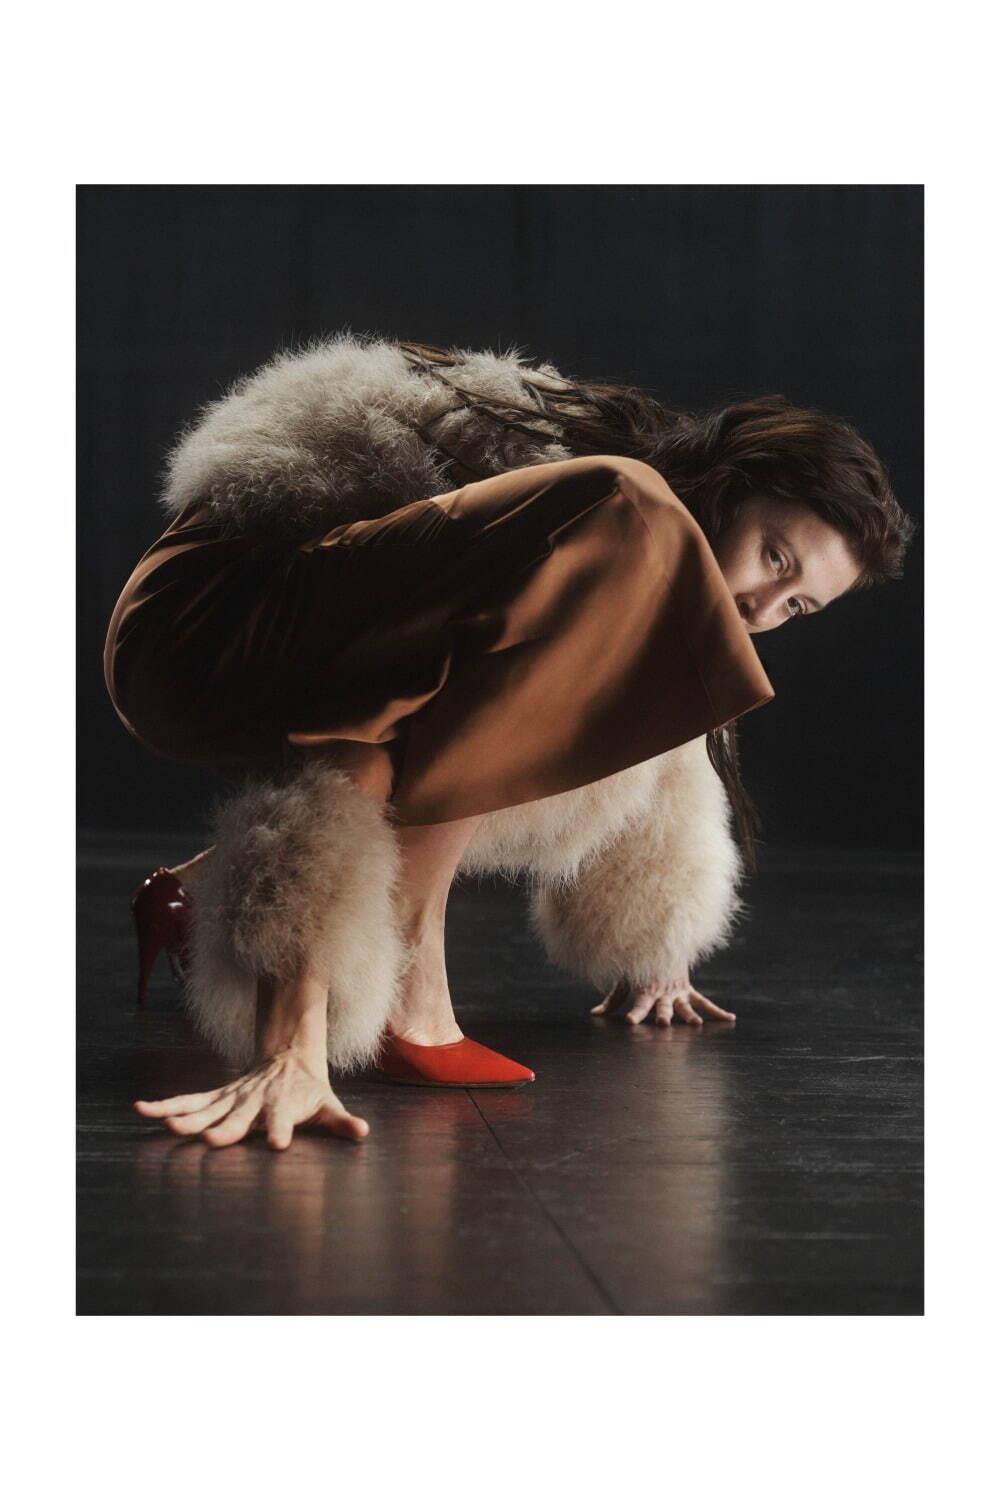 ドリス ヴァン ノッテン 2021-22年秋冬ウィメンズコレクション、舞い踊る身体と共鳴する衣服 コピー